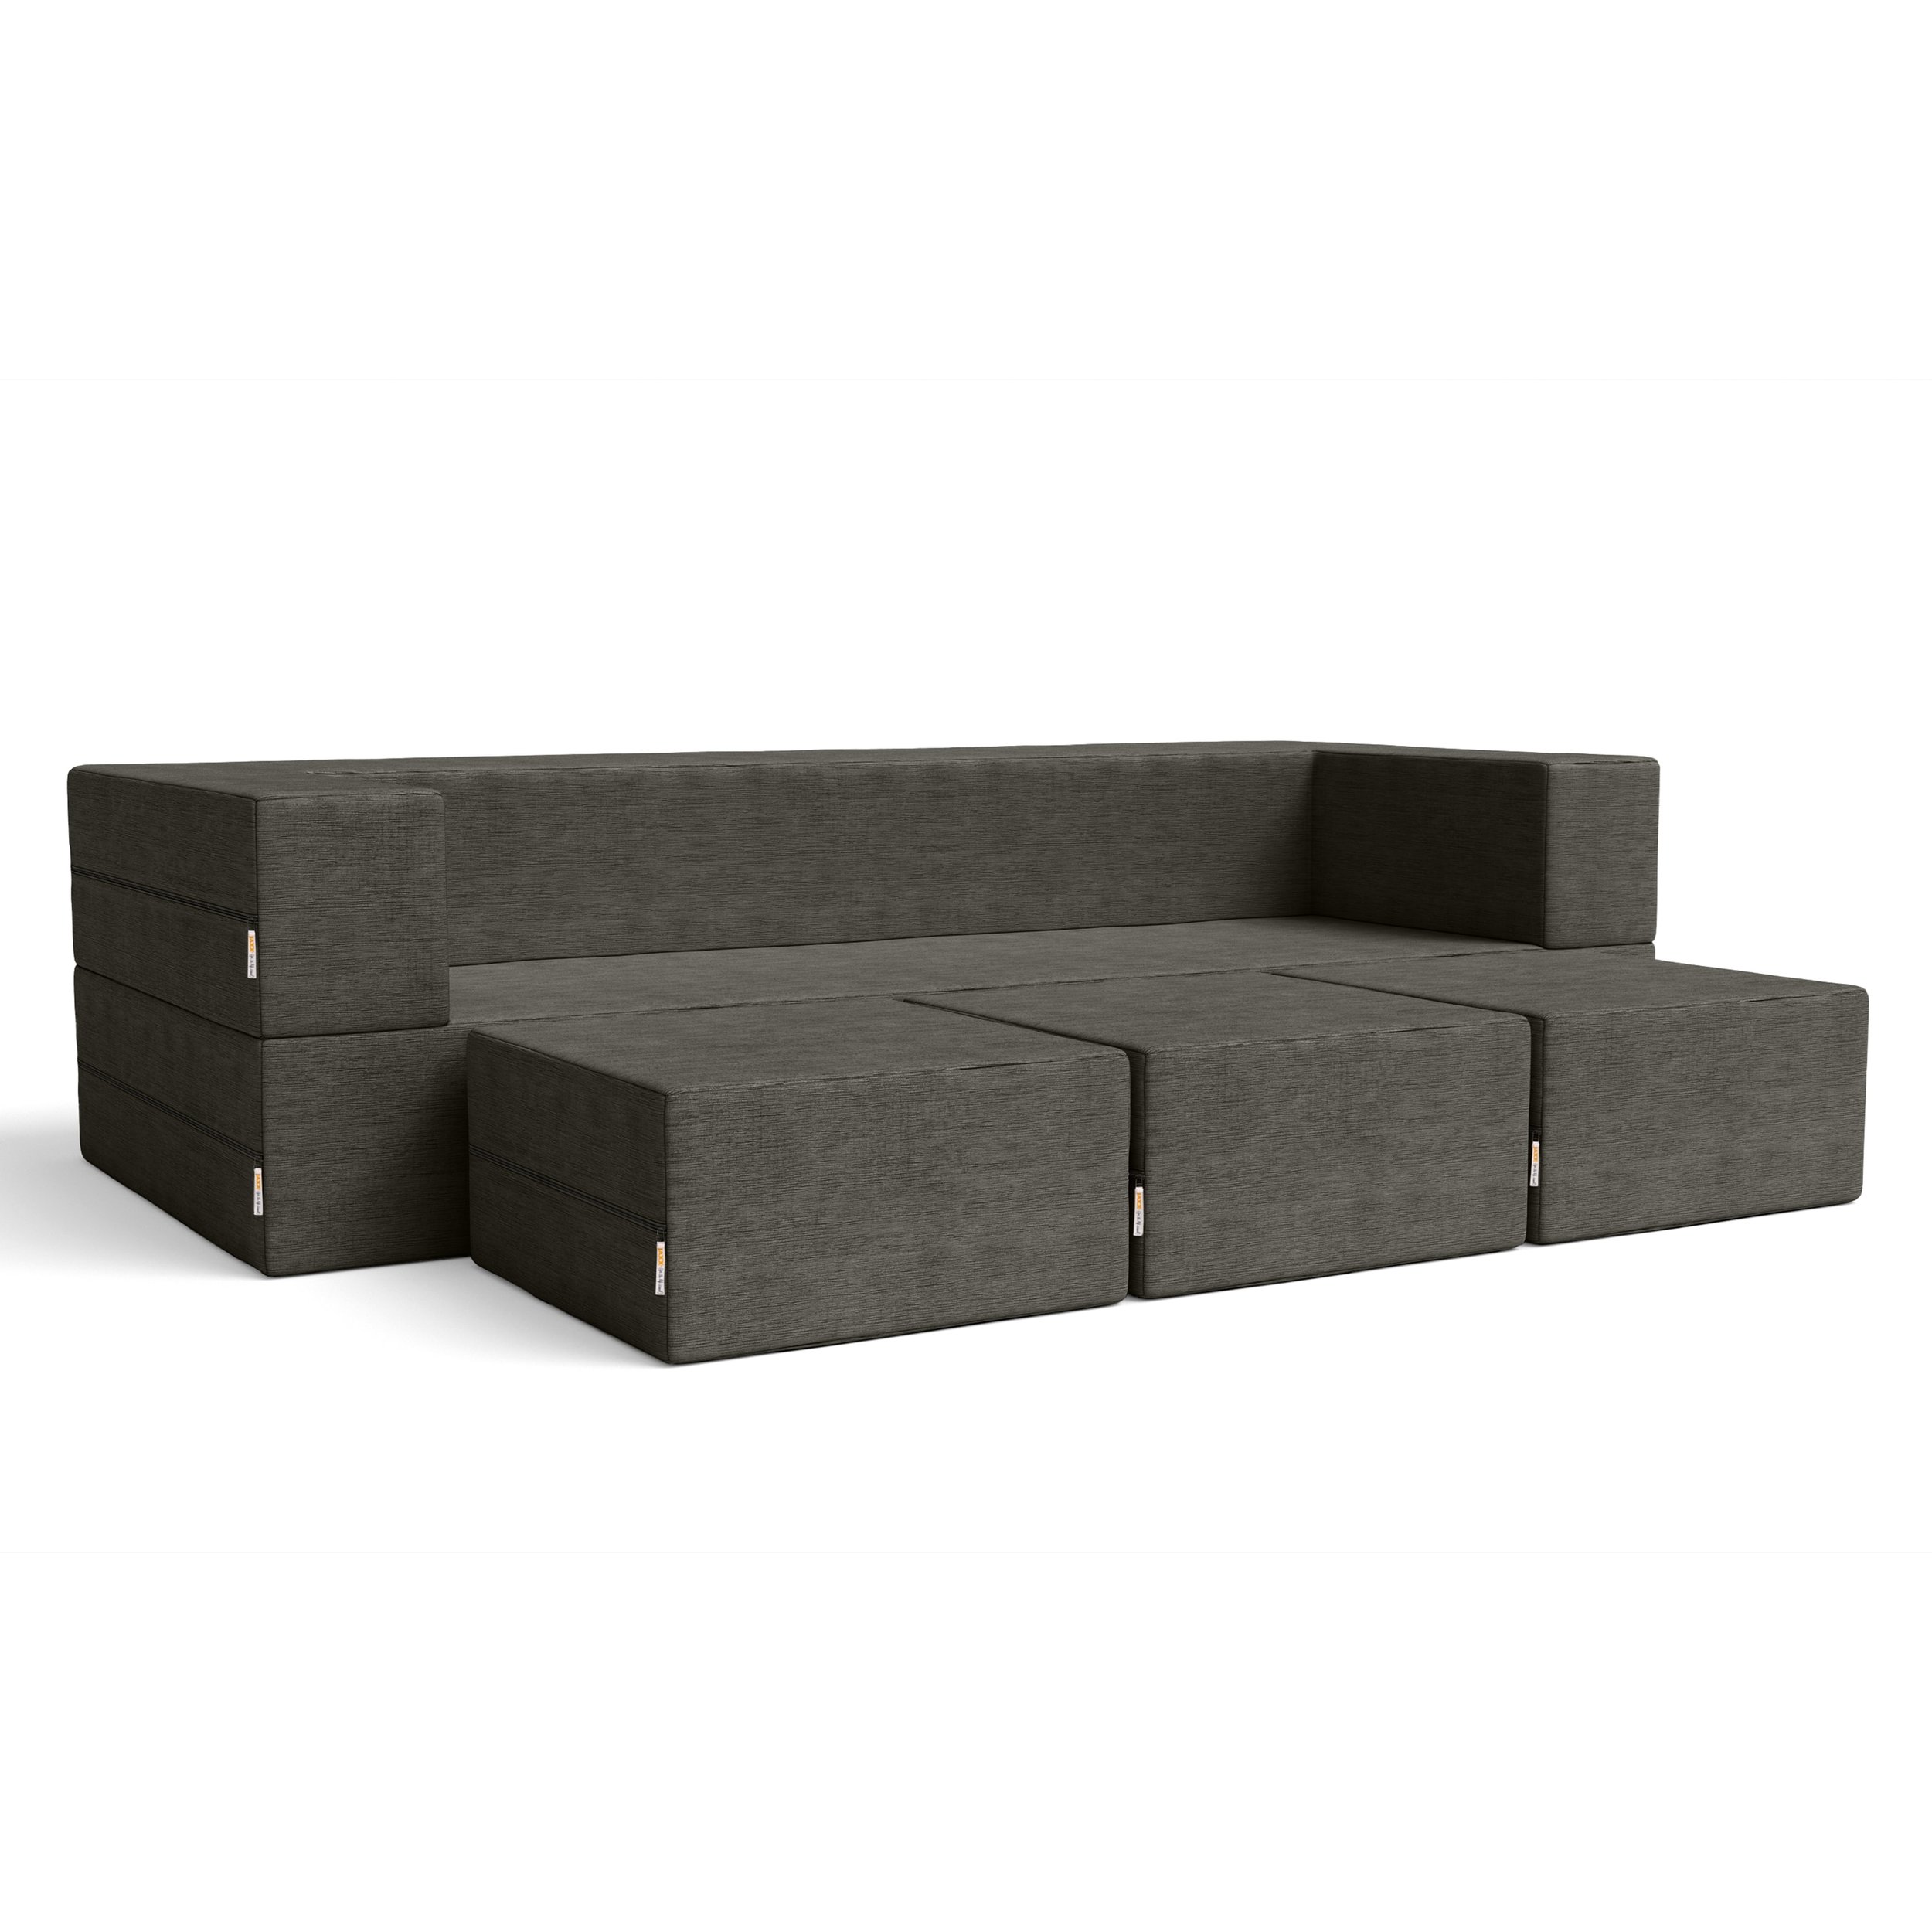 zipline-sofa-charcoal-couchposition-3000x3000.jpg